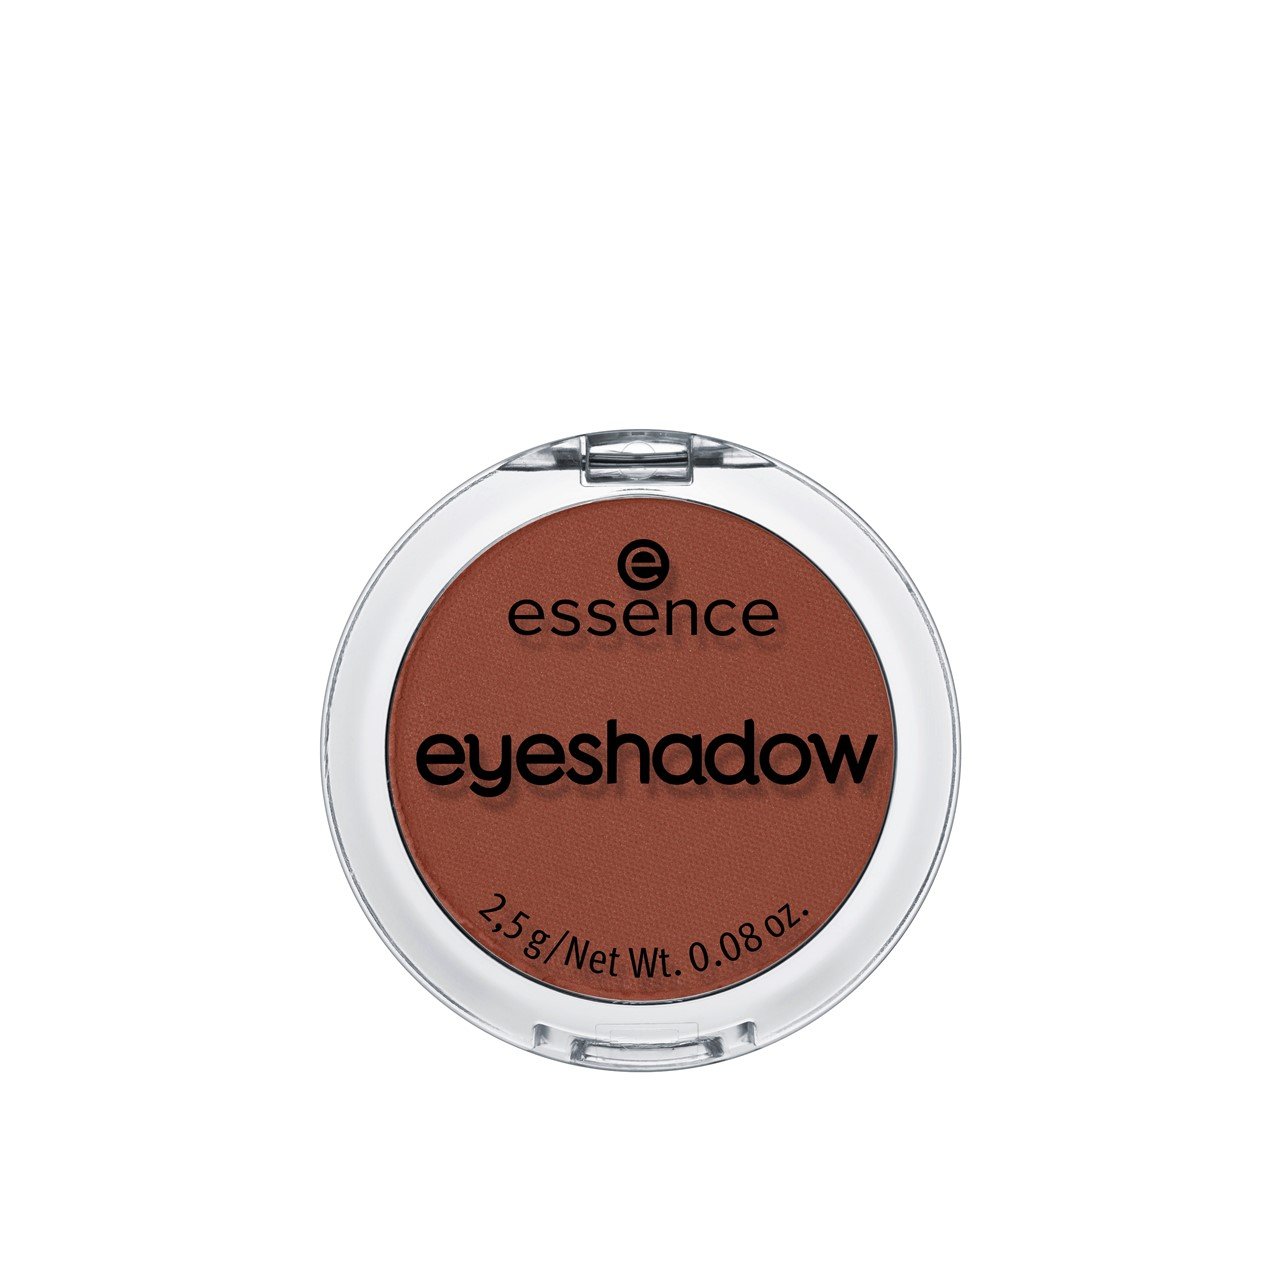 essence Eyeshadow 10 Legendary 2.5g (0.09oz)